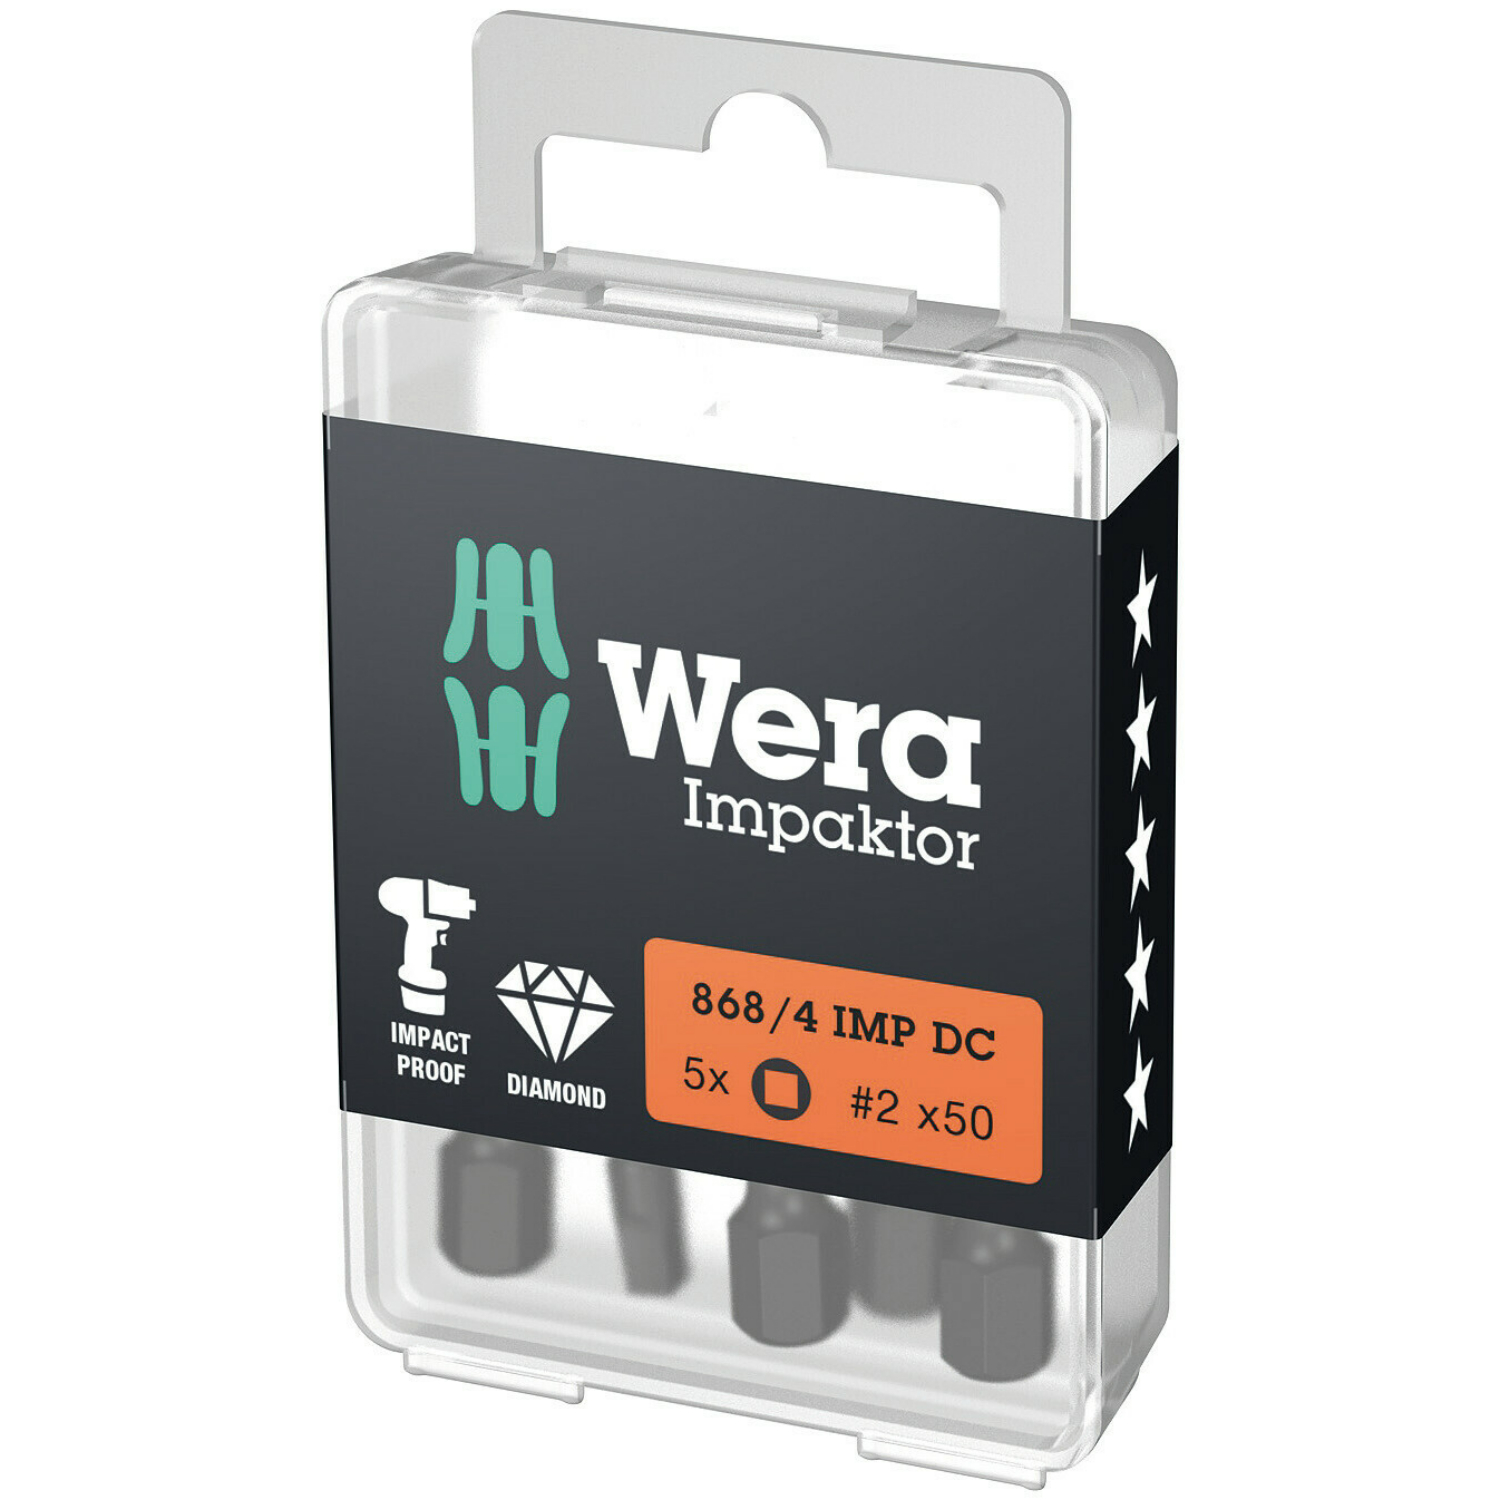 Wera 868/4 Embouts pour vis à empreinte carrée IMP DC Impaktor, R2 x 50 mm, 5 pièces-image